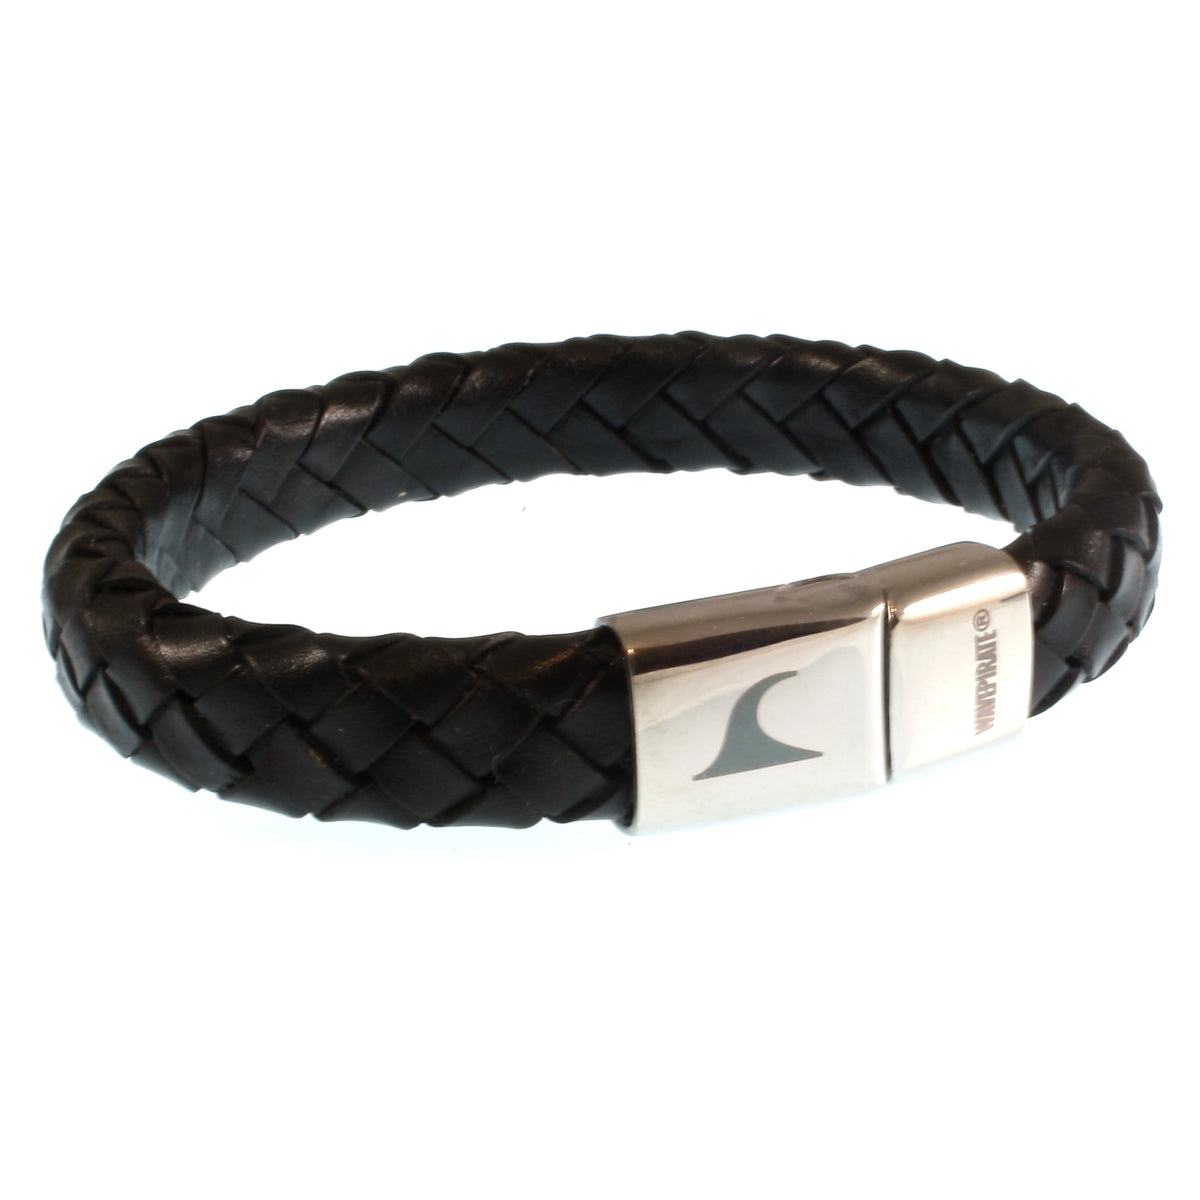 Herren-Leder-Armband-Tarifa-schwarz-geflochten-oval-Edelstahlverschluss-vorn-wavepirate-shop-ov